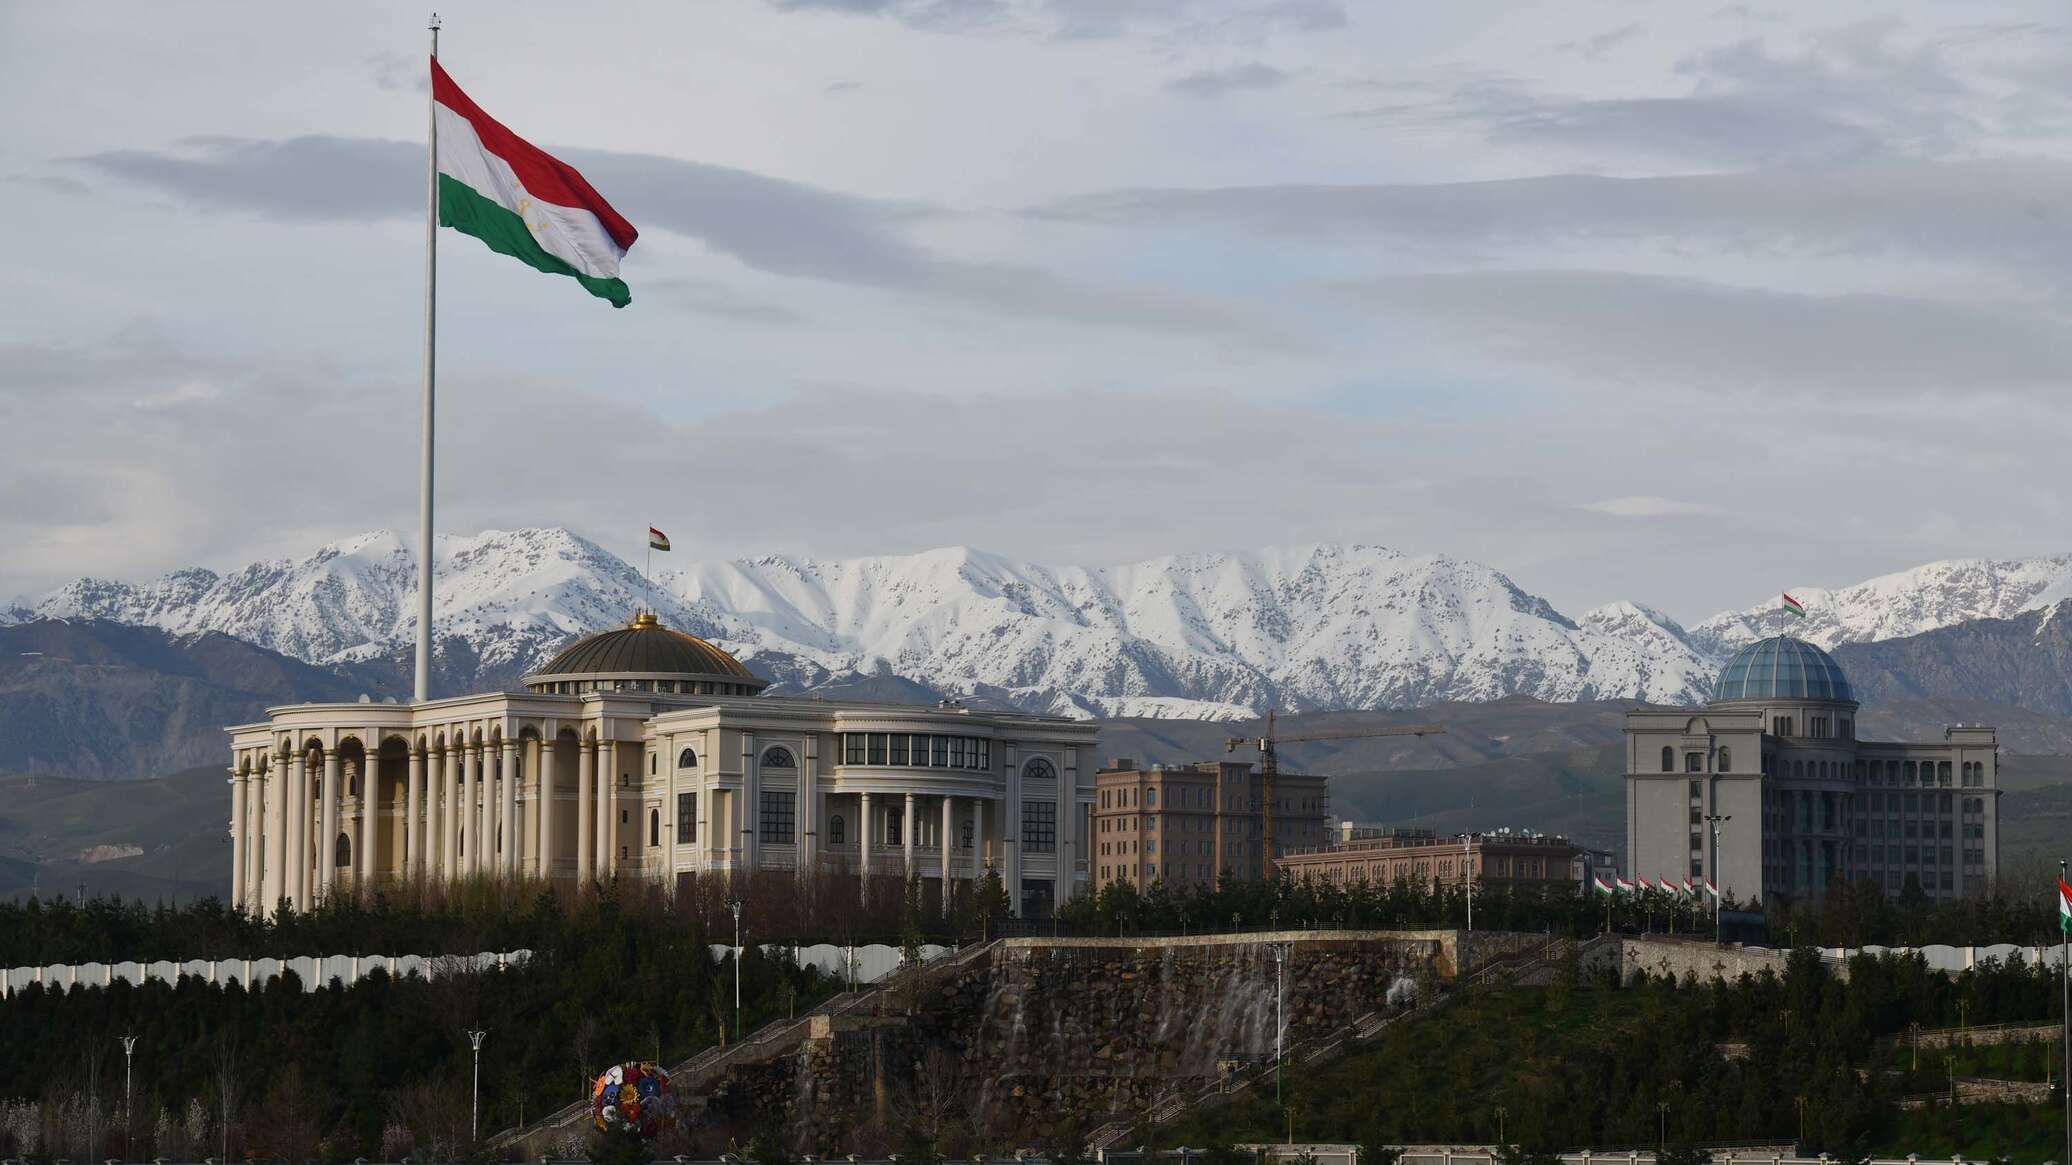 Таджикистан точикистон. Душанбе столица Таджикистана. Здание правительства Республики Таджикистан. Столица Таджикистана сейчас 2022. Парламент Таджикистана здание.